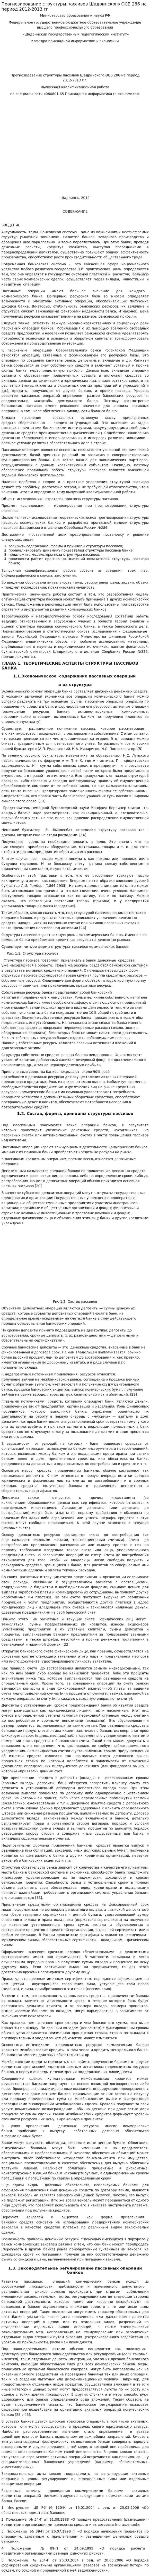 Прогнозирование структуры пассивов Шадринского ОСБ 286 на период 2012-2013 гг